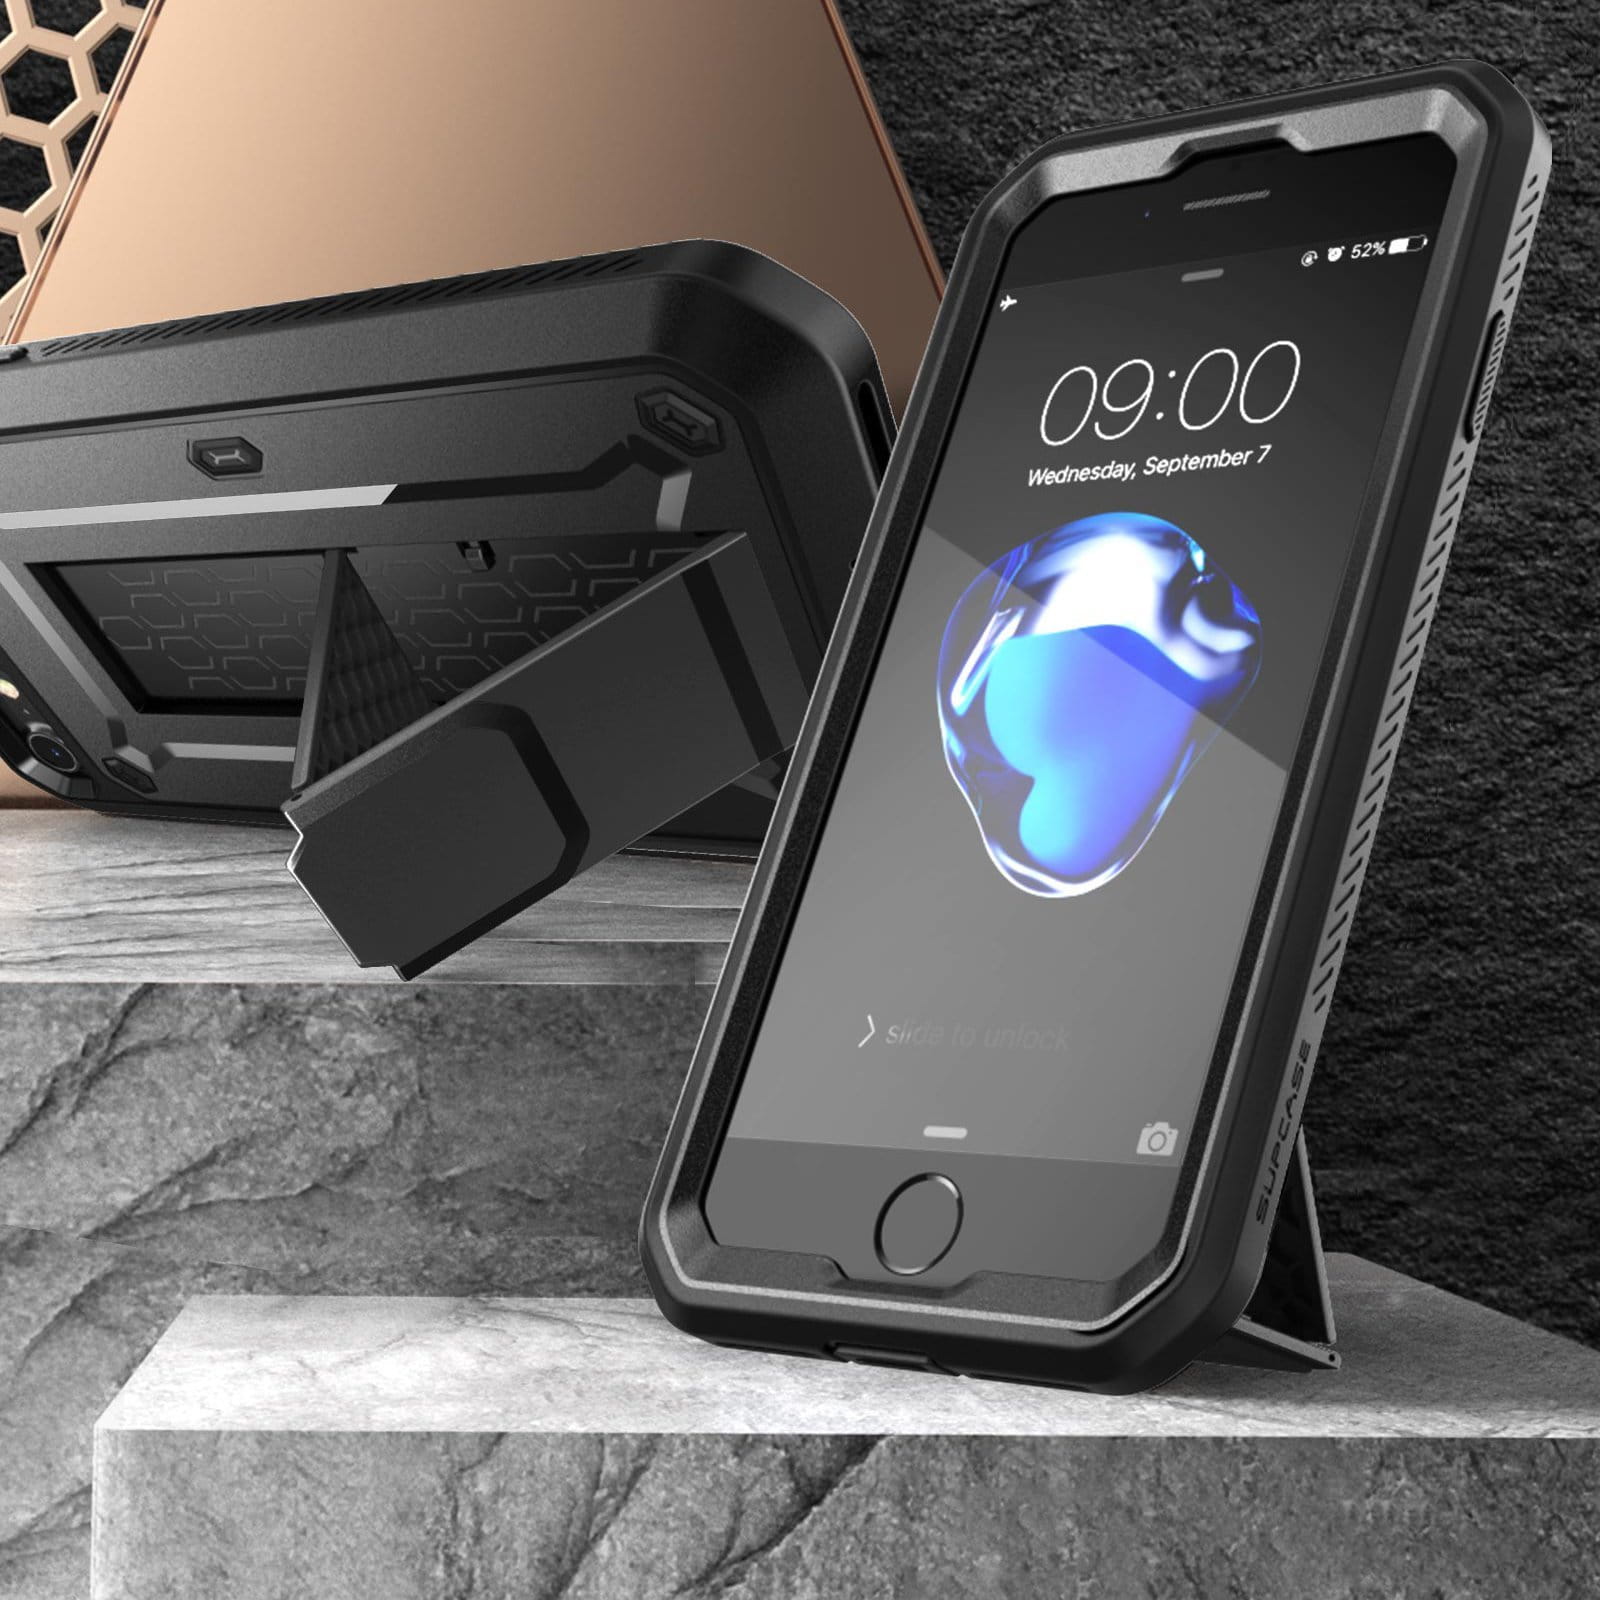 Gepanzerte Schutzhülle mit eingebautem Displayschutz, Ständer und Holster mit Drehclip Supcase aus der Serie Unicorn Beetle Pro für iPhone SE 2020, 8/7, schwarz.